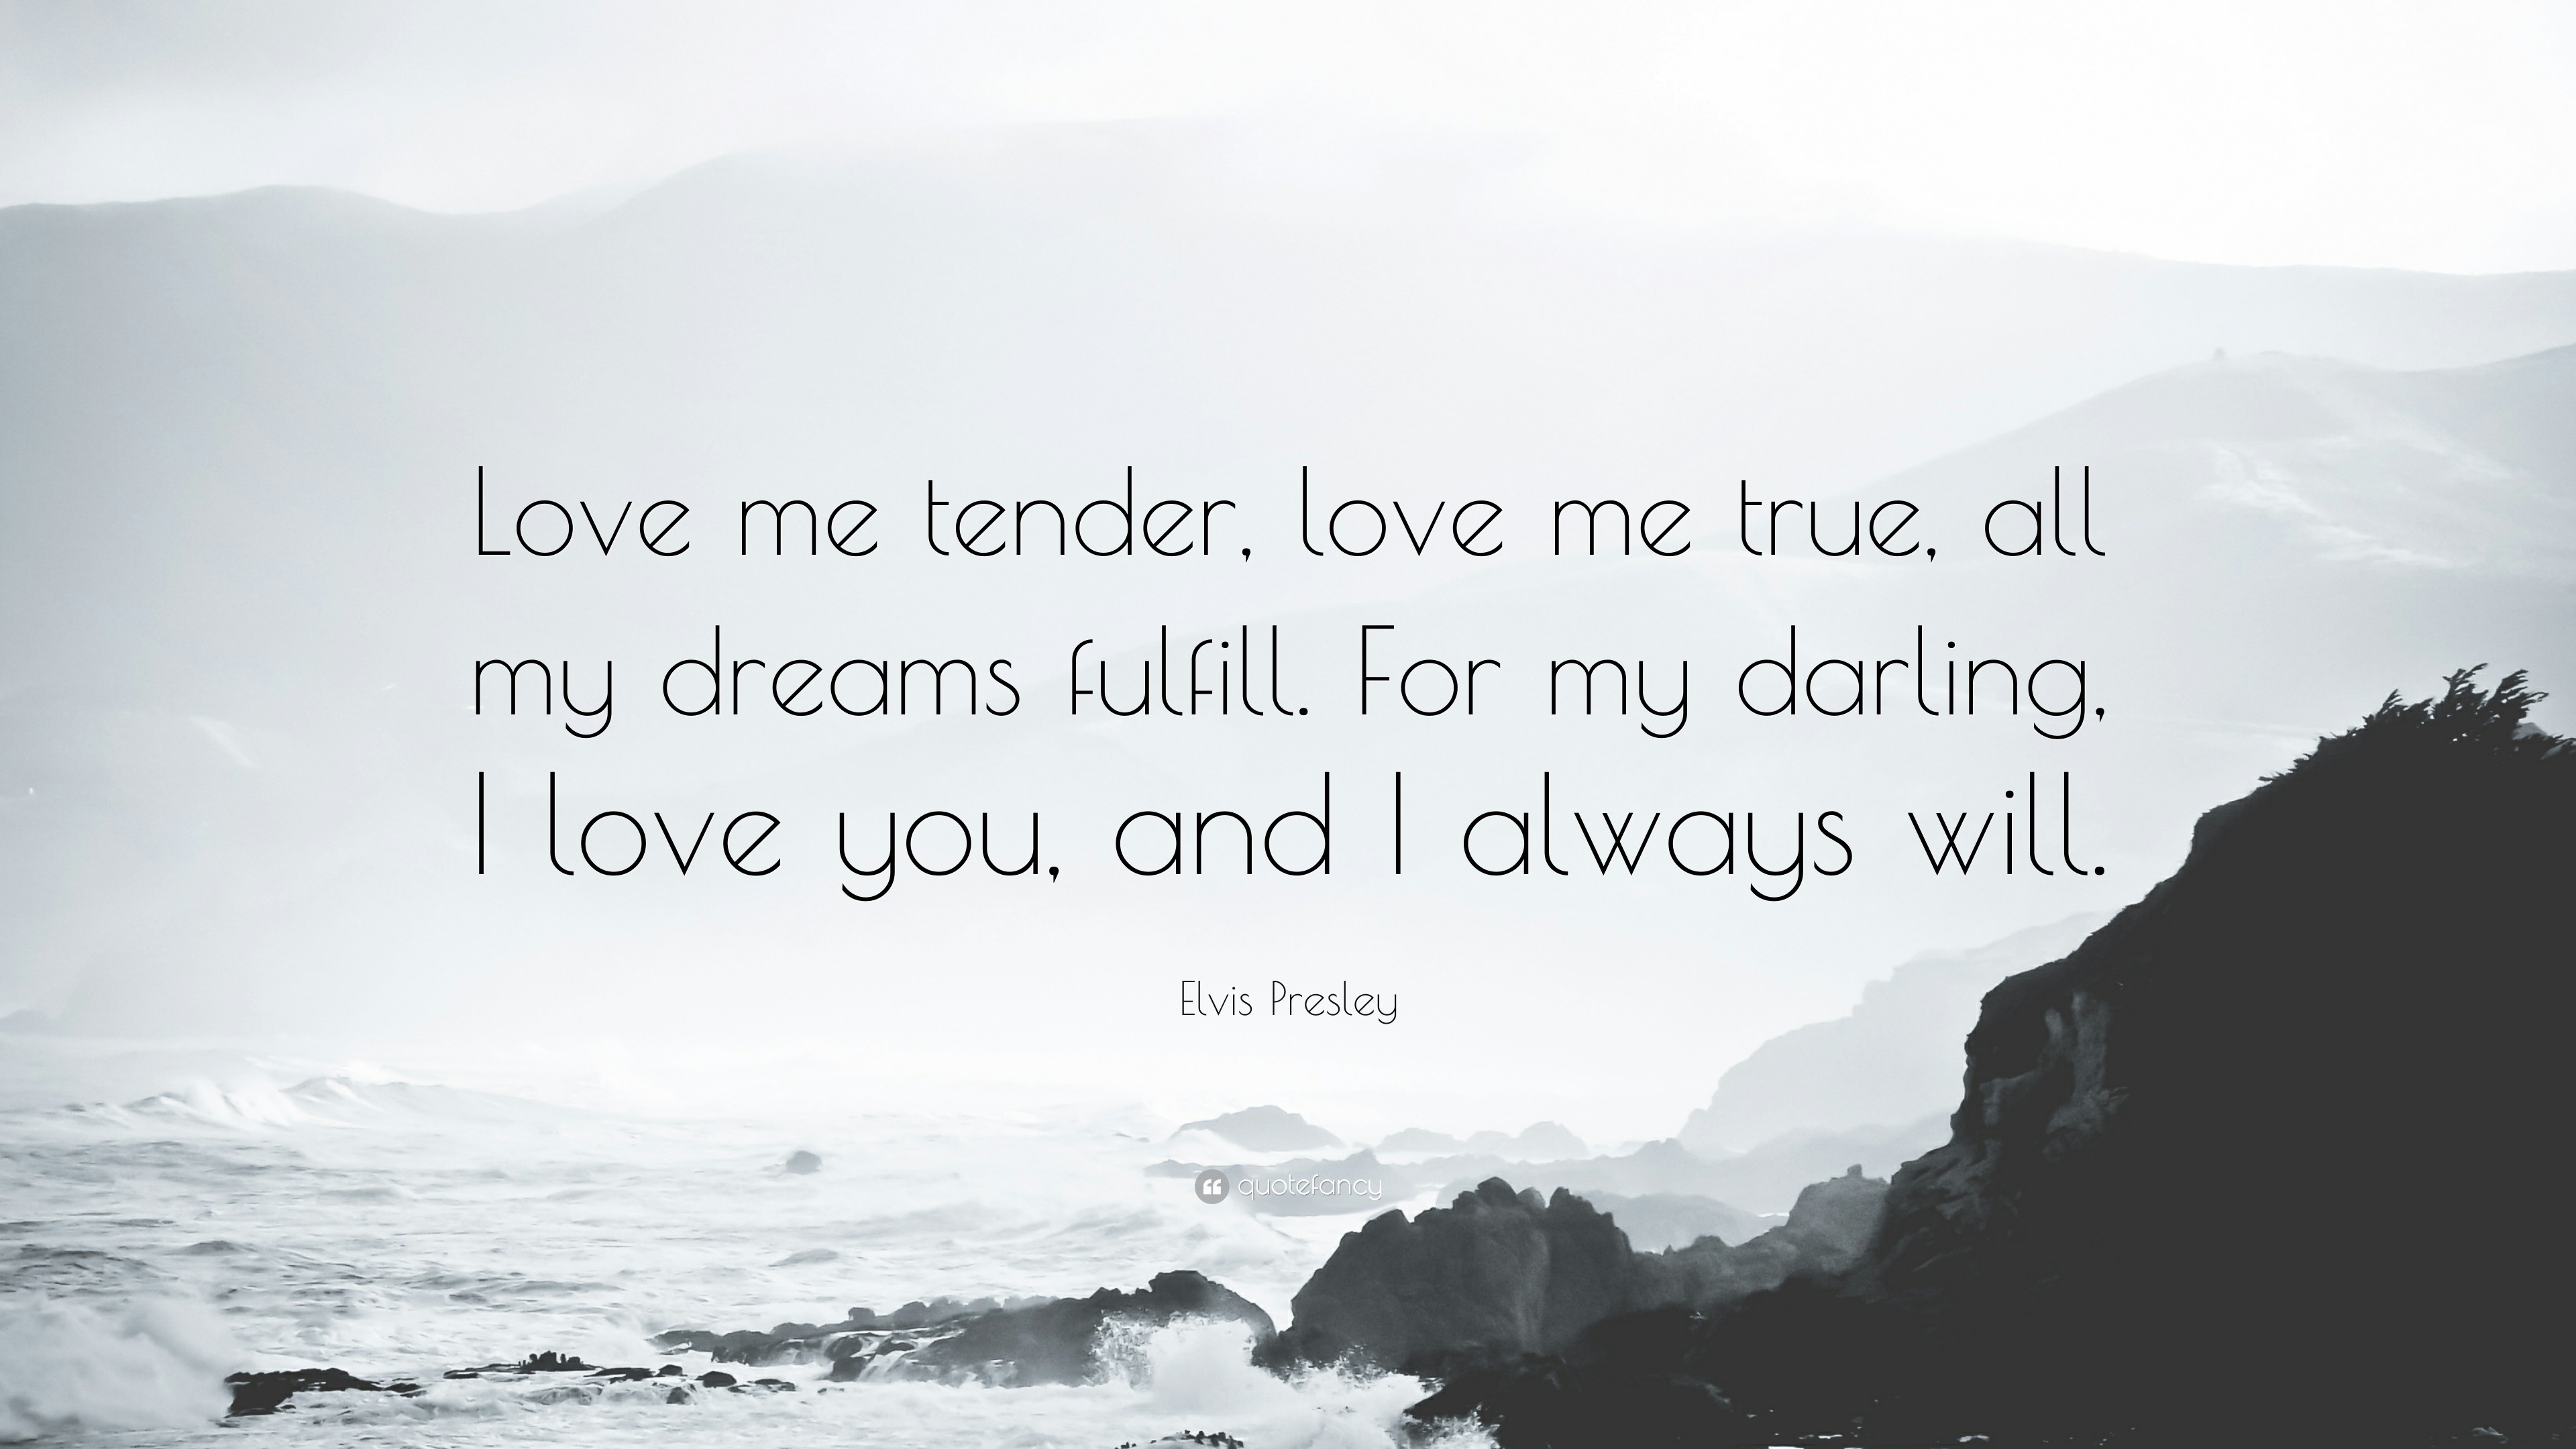 Elvis Presley Quote “Love me tender love me true all my dreams